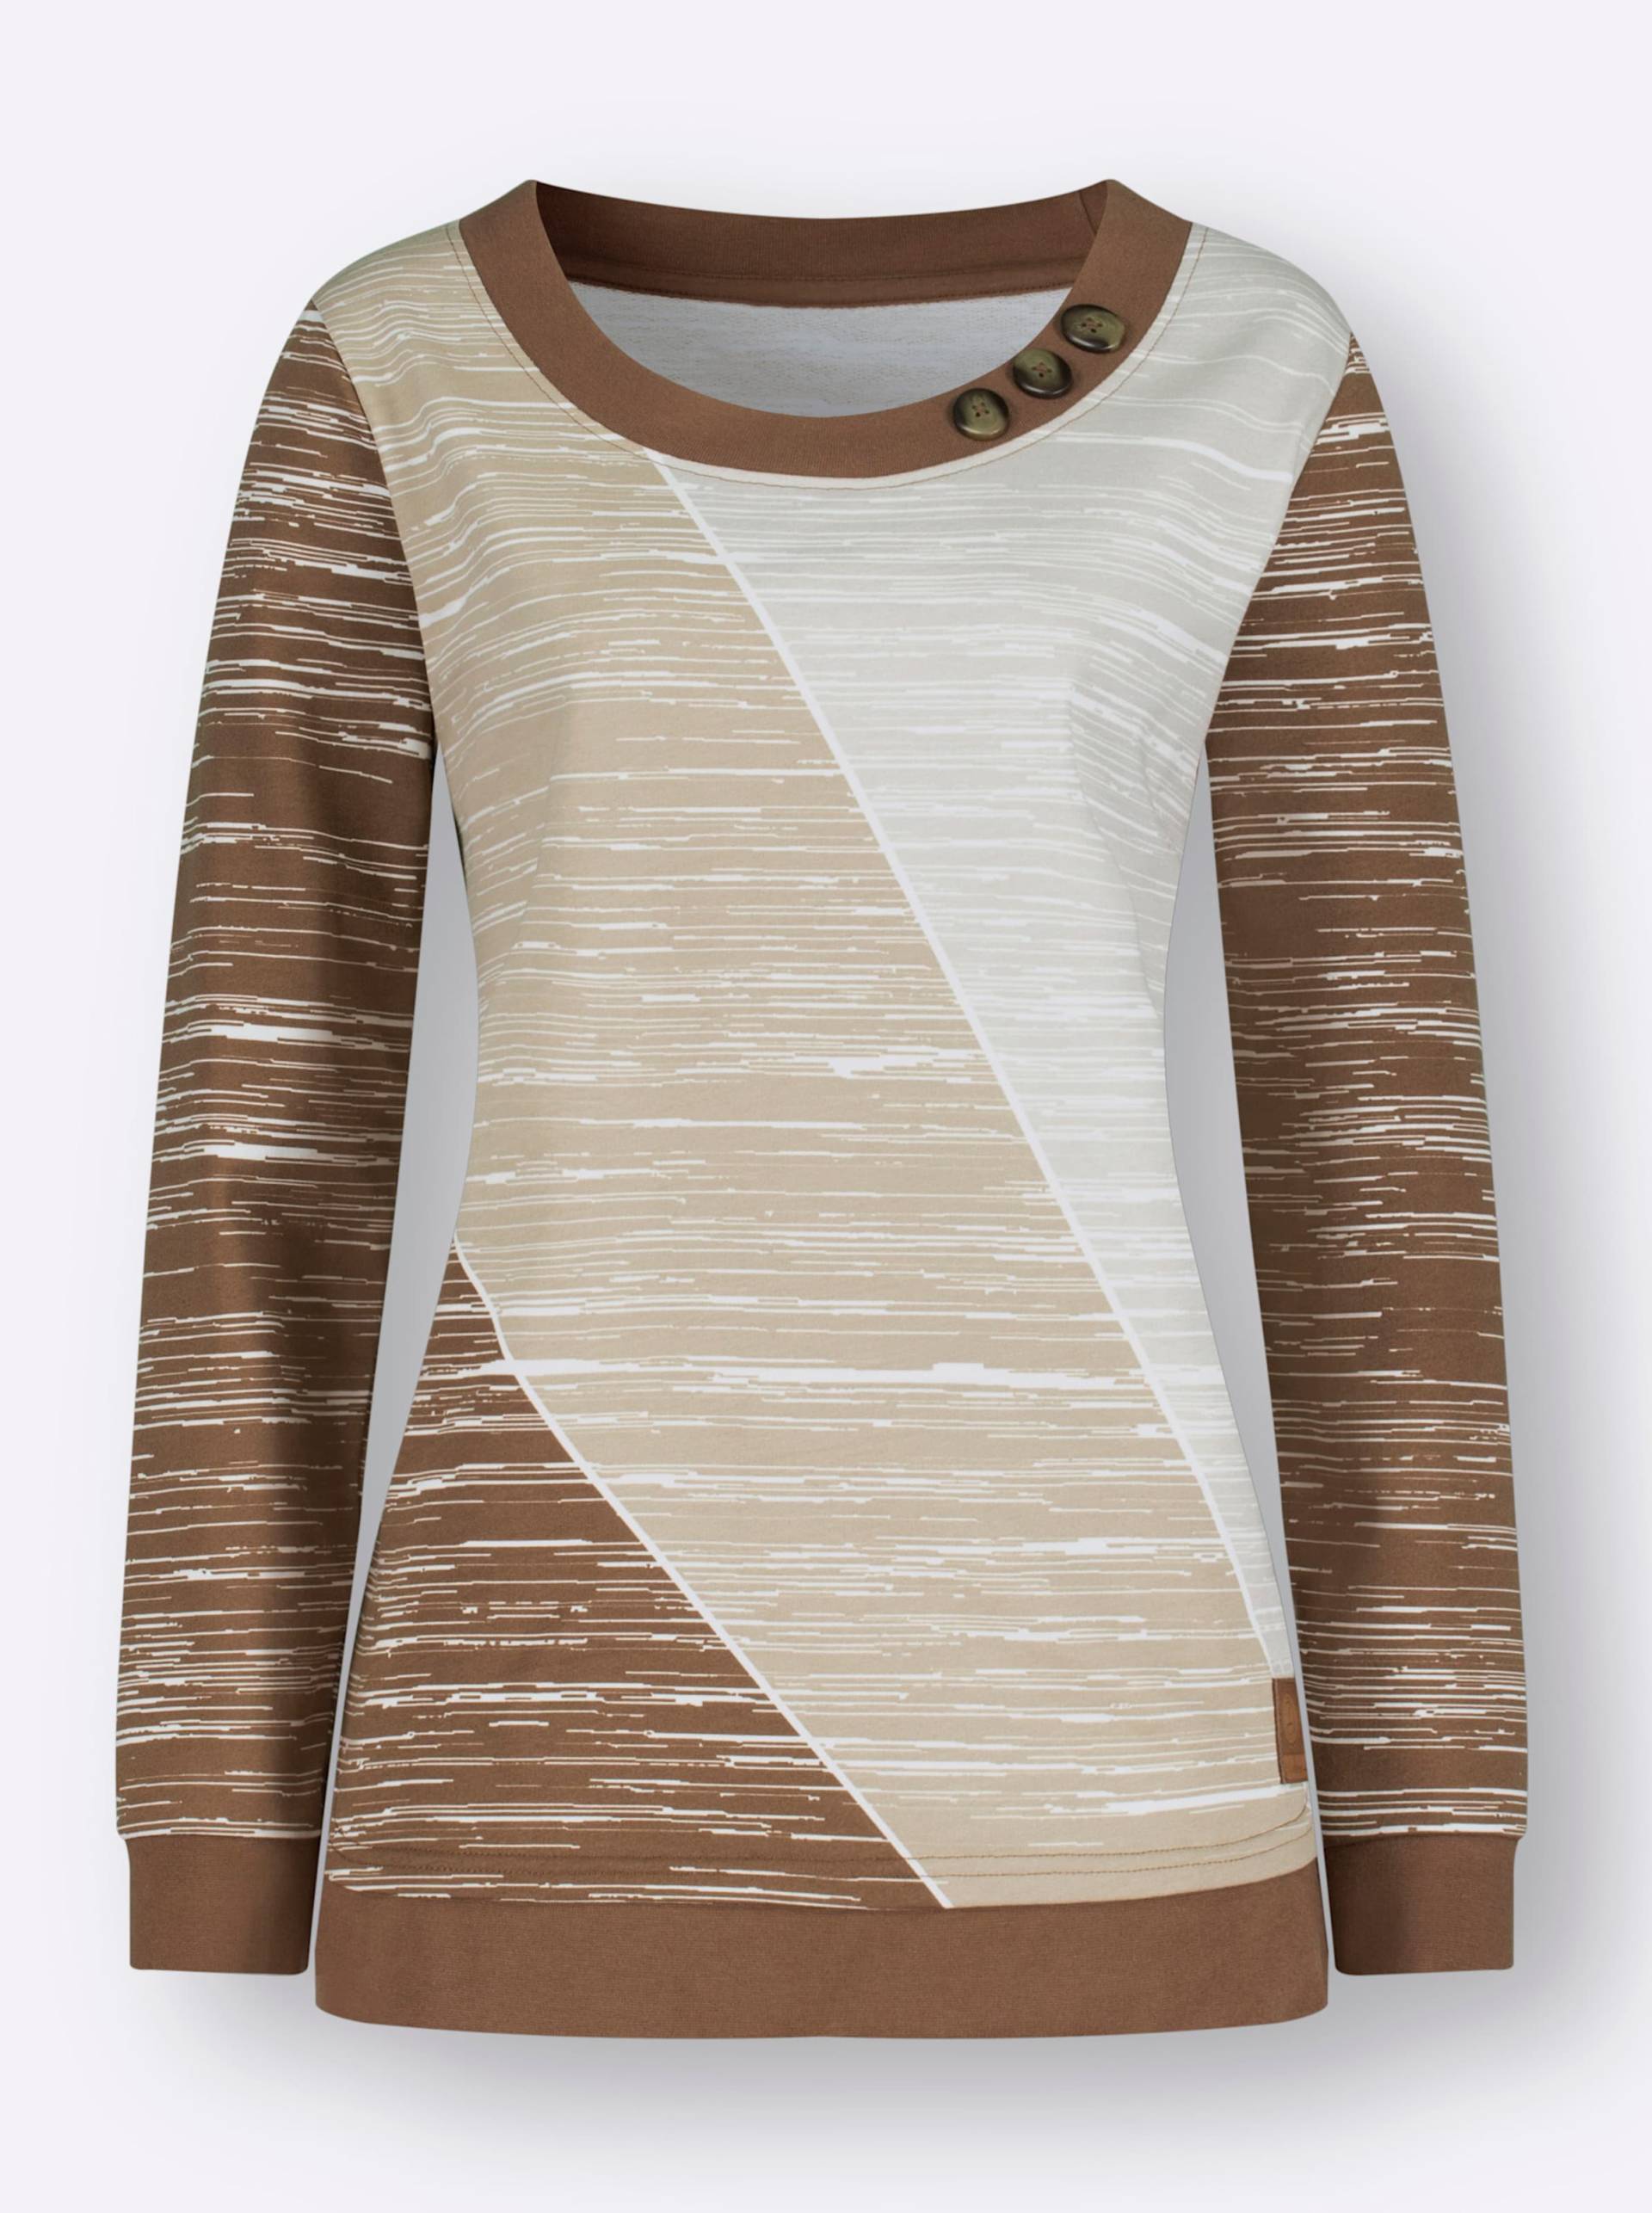 Sweatshirt in braun-ecru-bedruckt von heine von heine